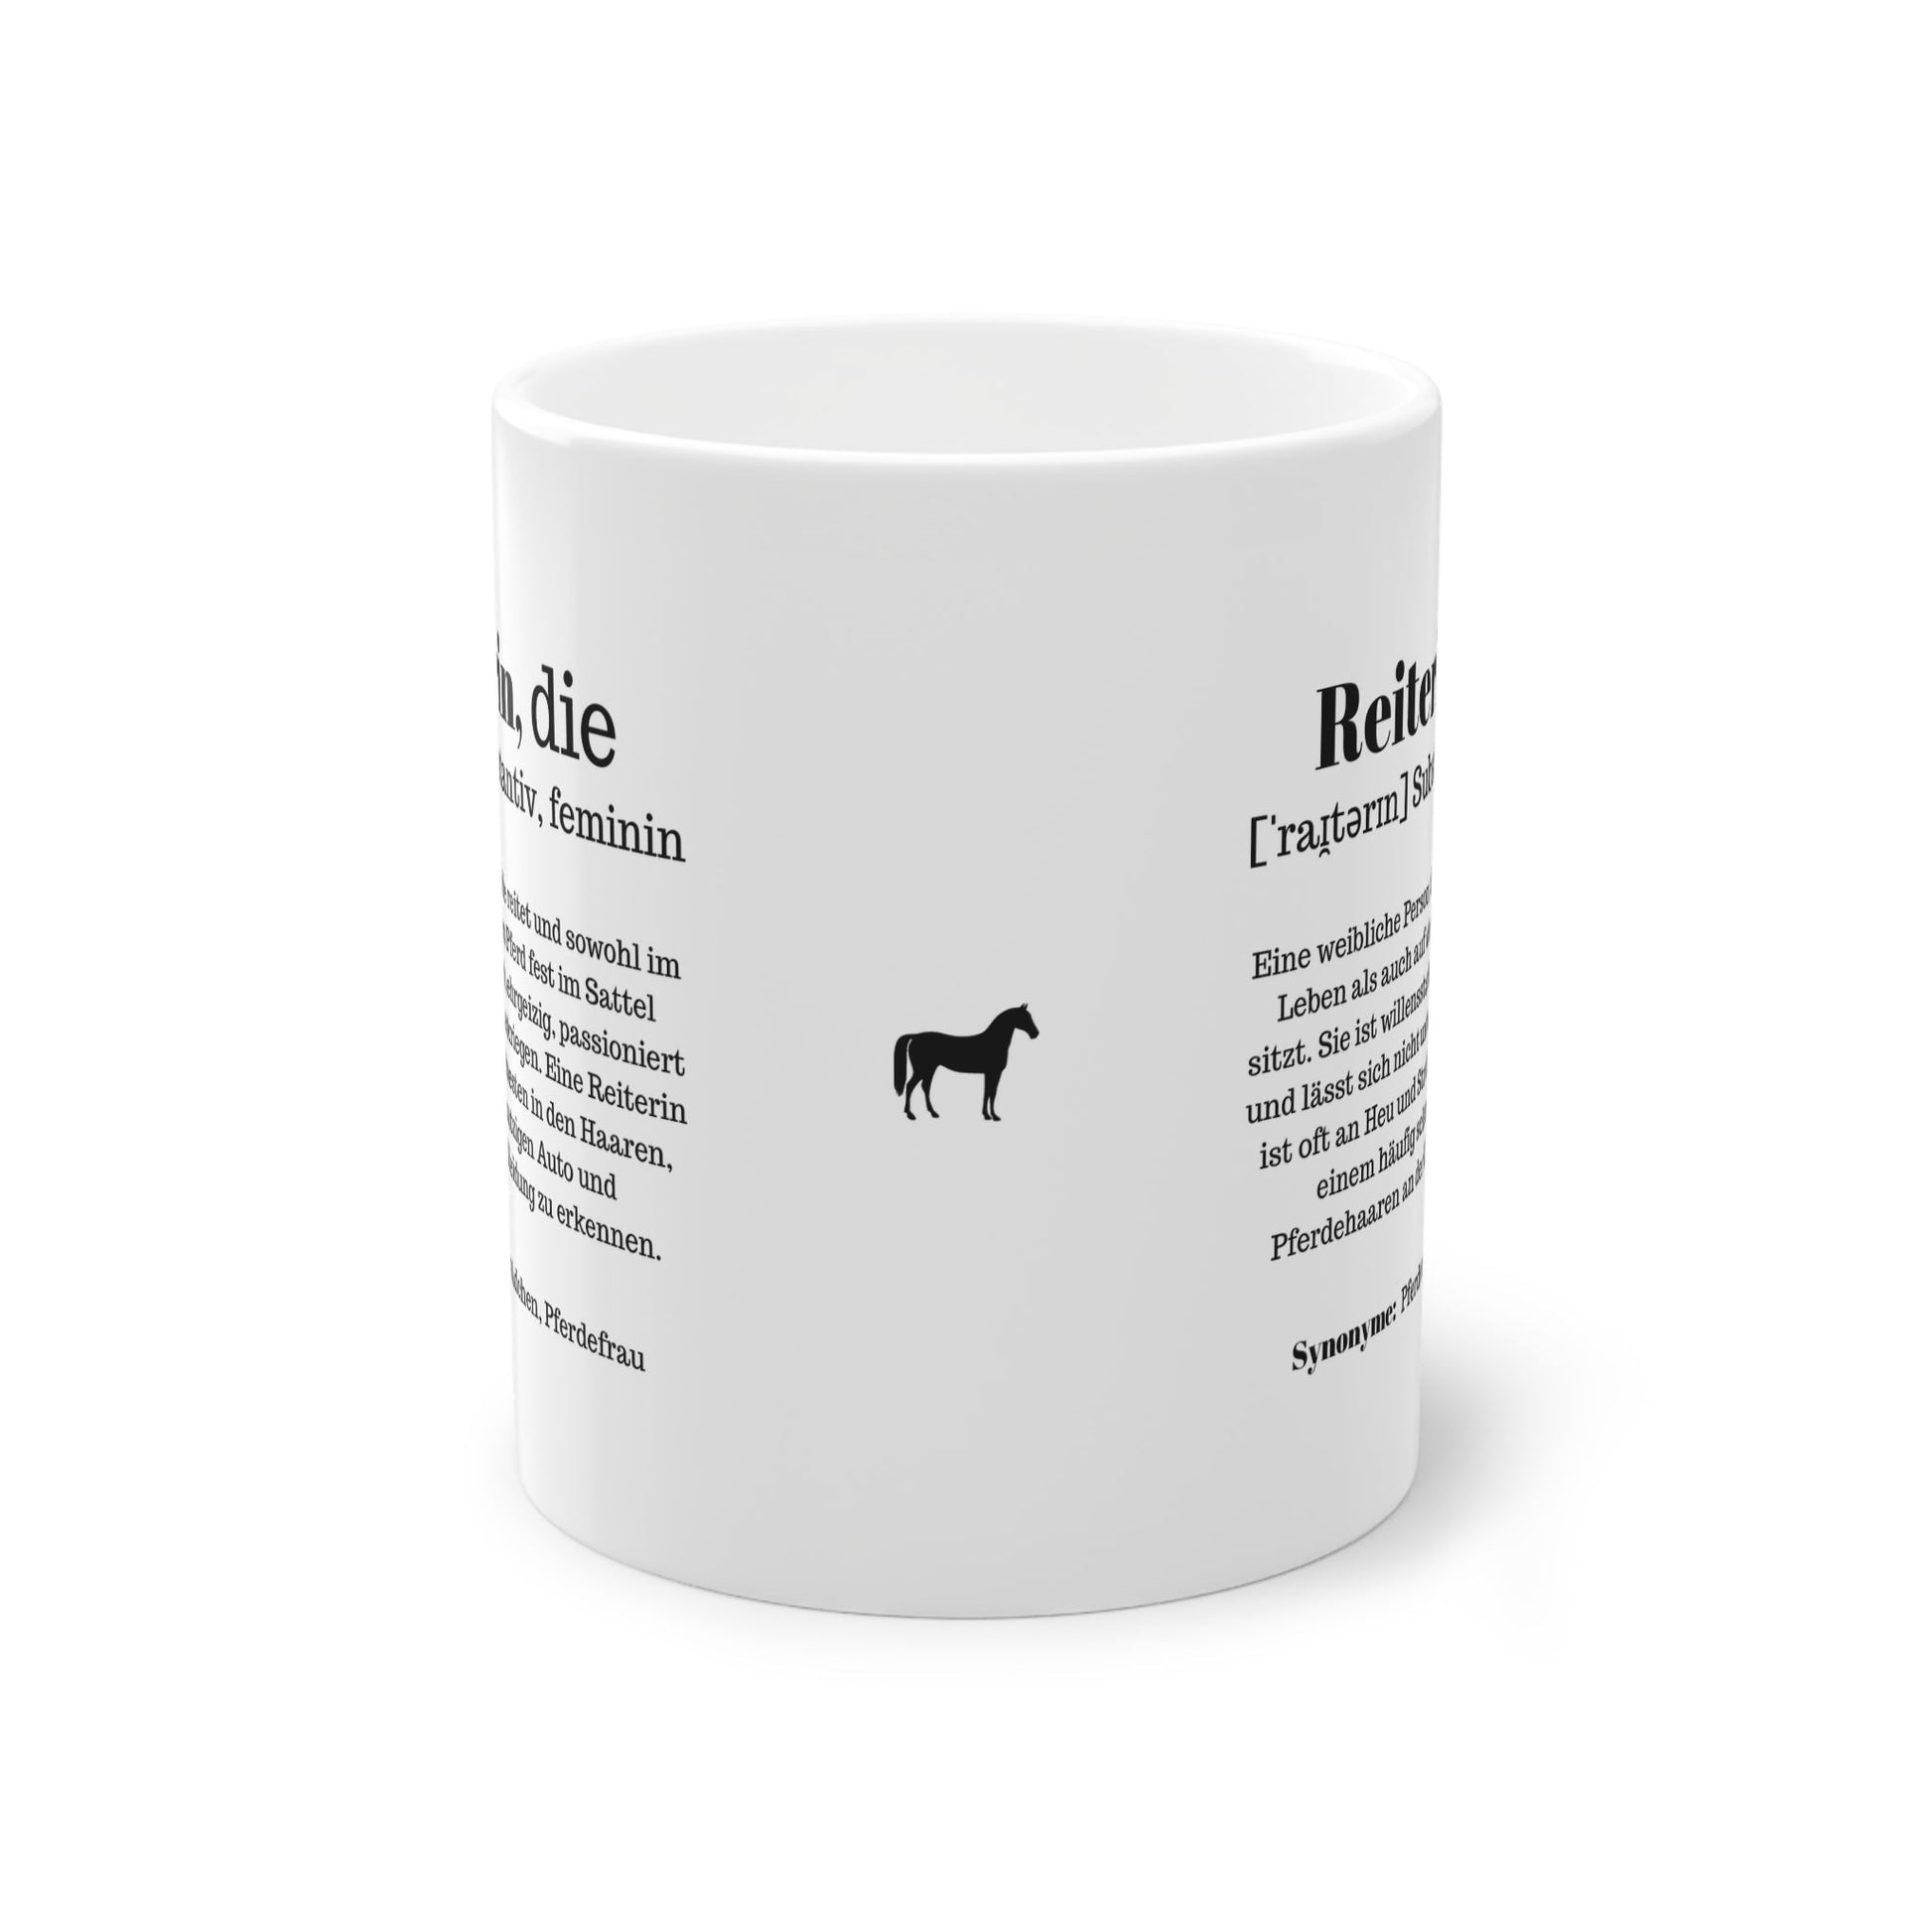 Die Reiterin Kaffeetasse - Das Geschenk für Pferdemädchen und Reiterinnen - Handvollhufeisen Shop